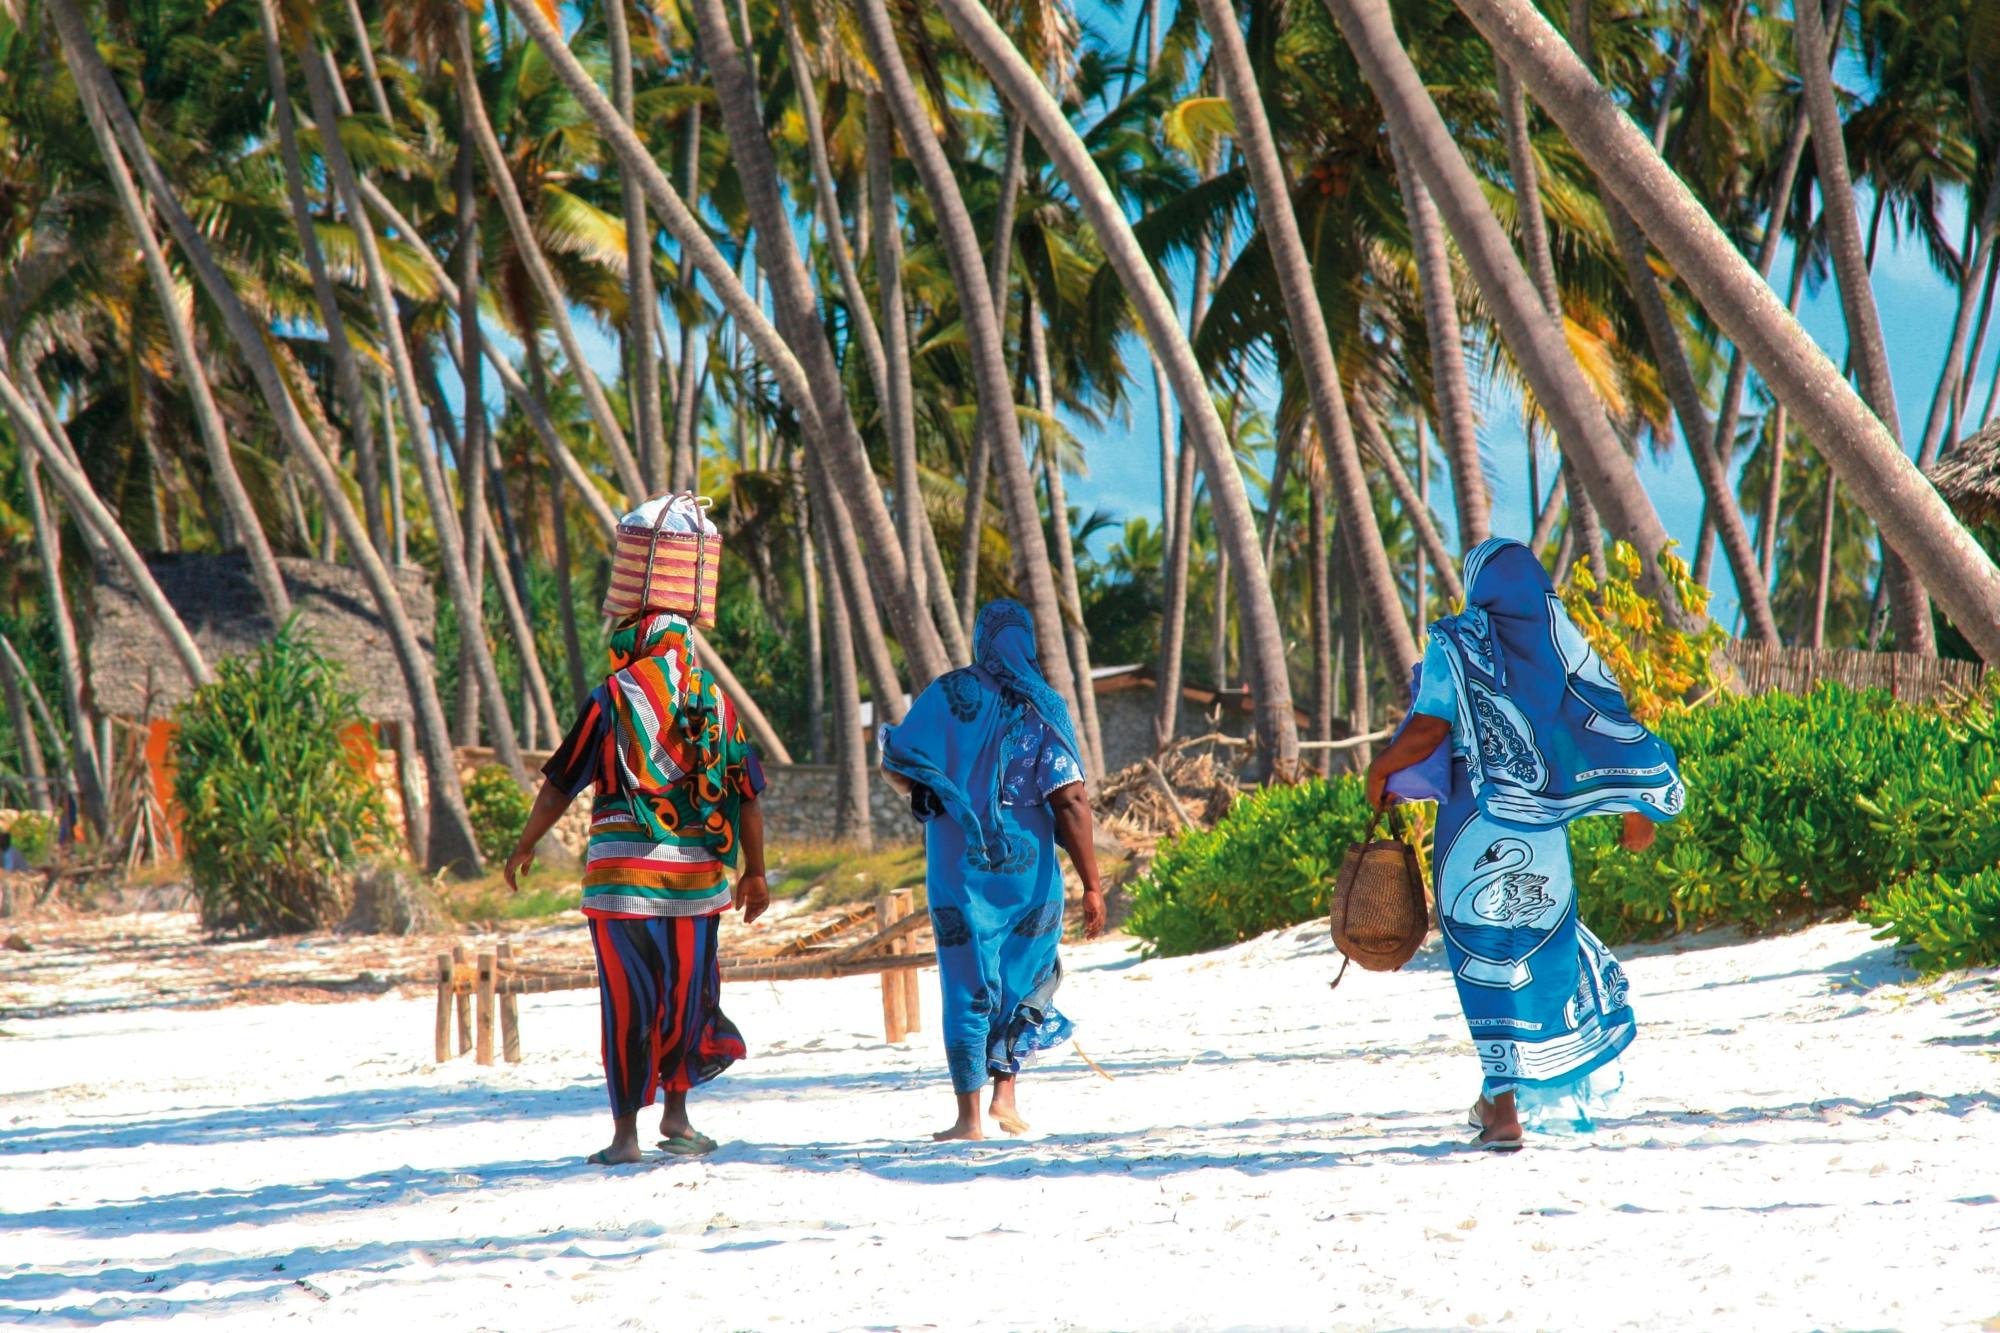 Tour della gente e della cultura a Zanzibar con una guida locale